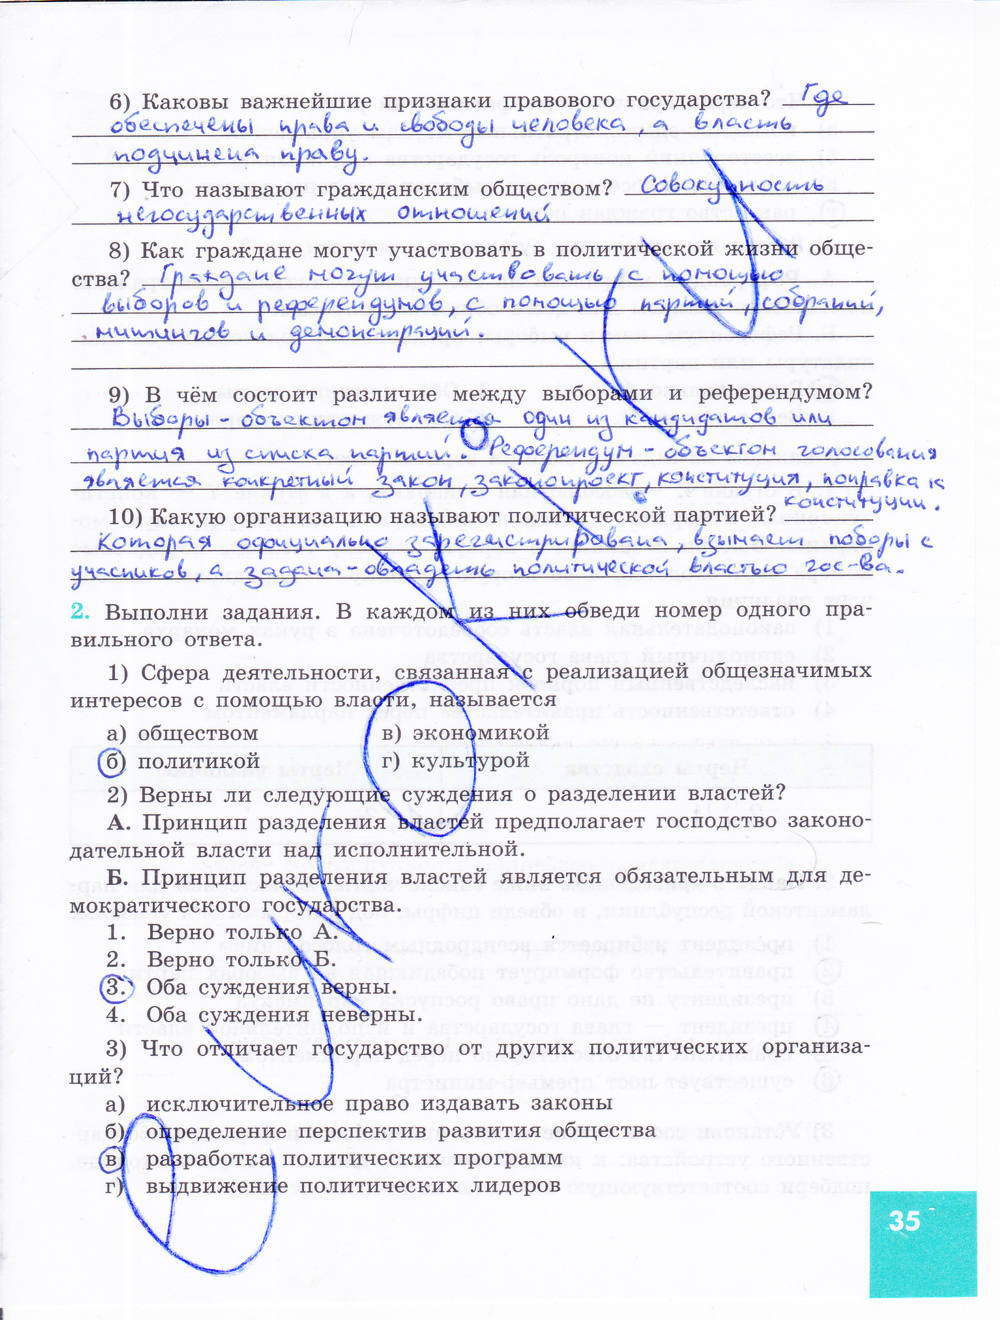 Зеленая тетрадь, 9 класс, Котова О.А. Лискова Т.Е., 2015, задание: стр. 35